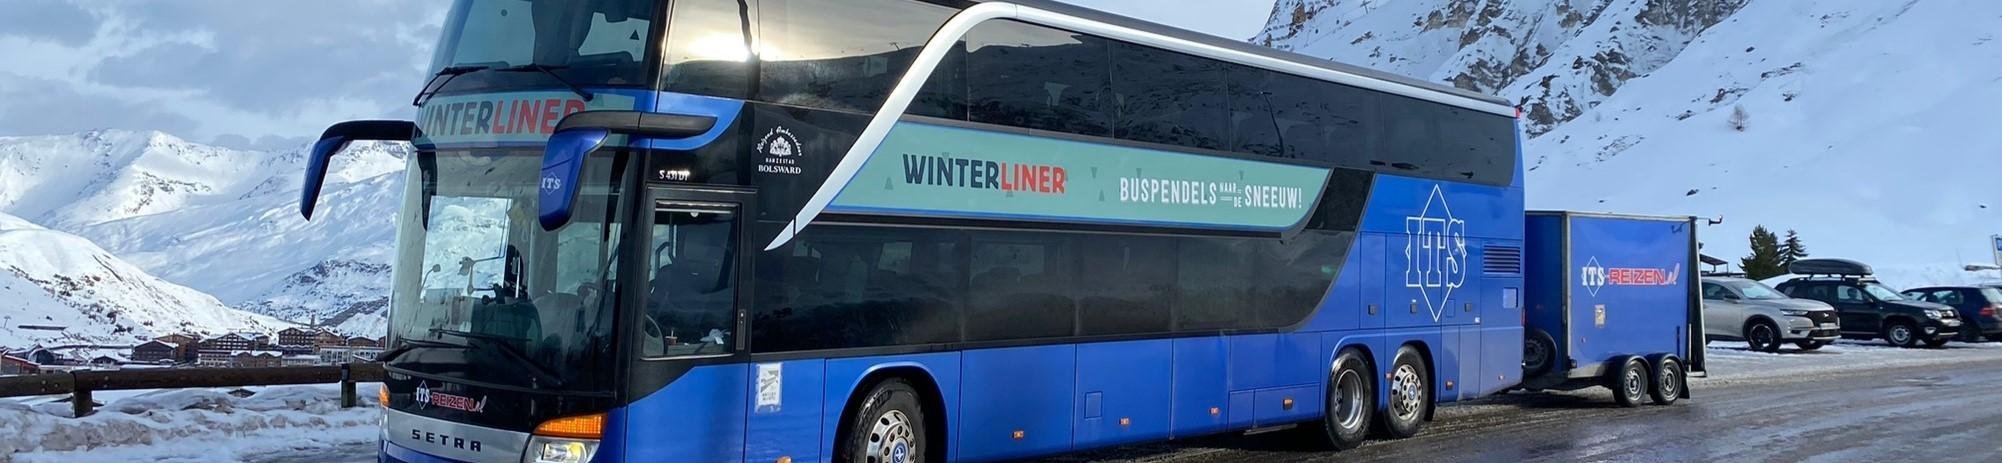 Goedkope busreizen naar de wintersport in Oostenrijk, Frankrijk en Italië vanaf € 99